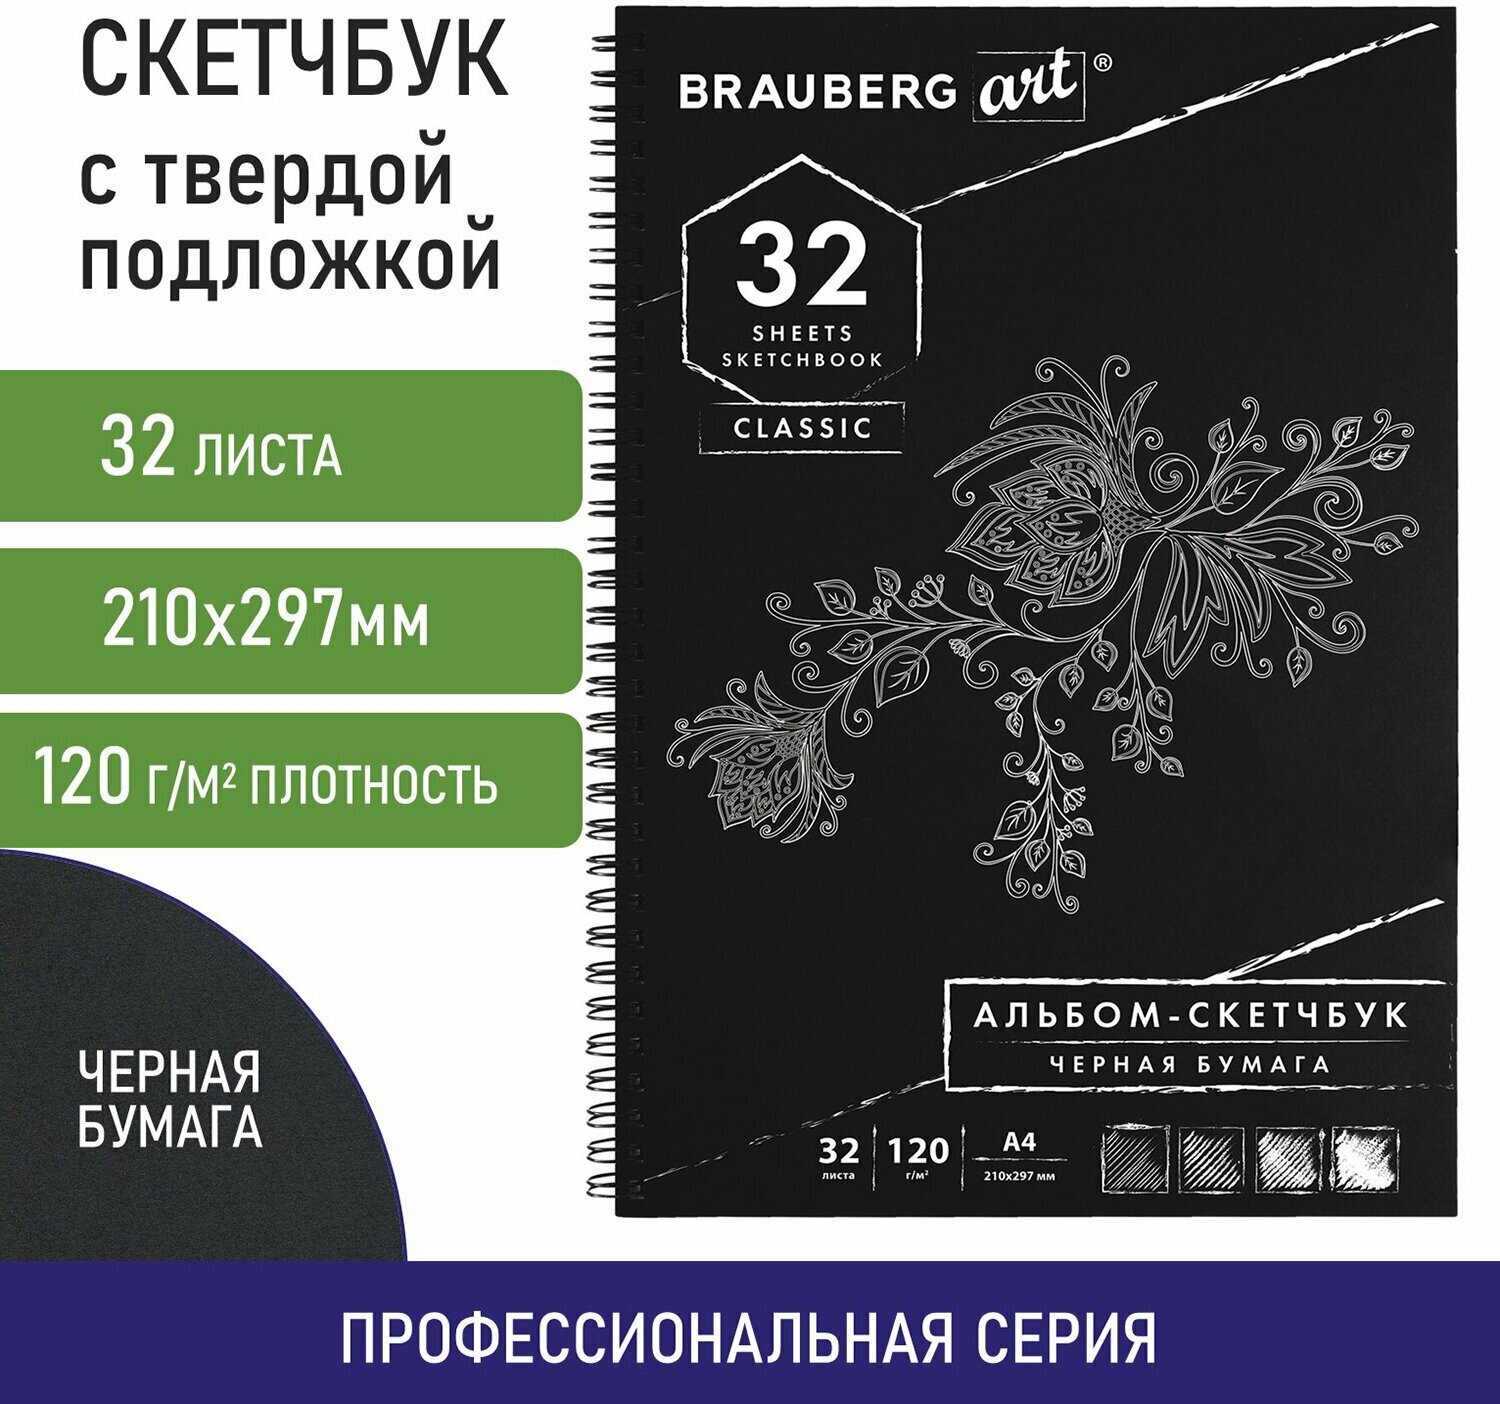 Блокнот-Скетчбук для рисования эскизов, черная бумага 120 г/м2, 210х297 мм, 32 листов, гребень, Brauberg Art Classic, 128951